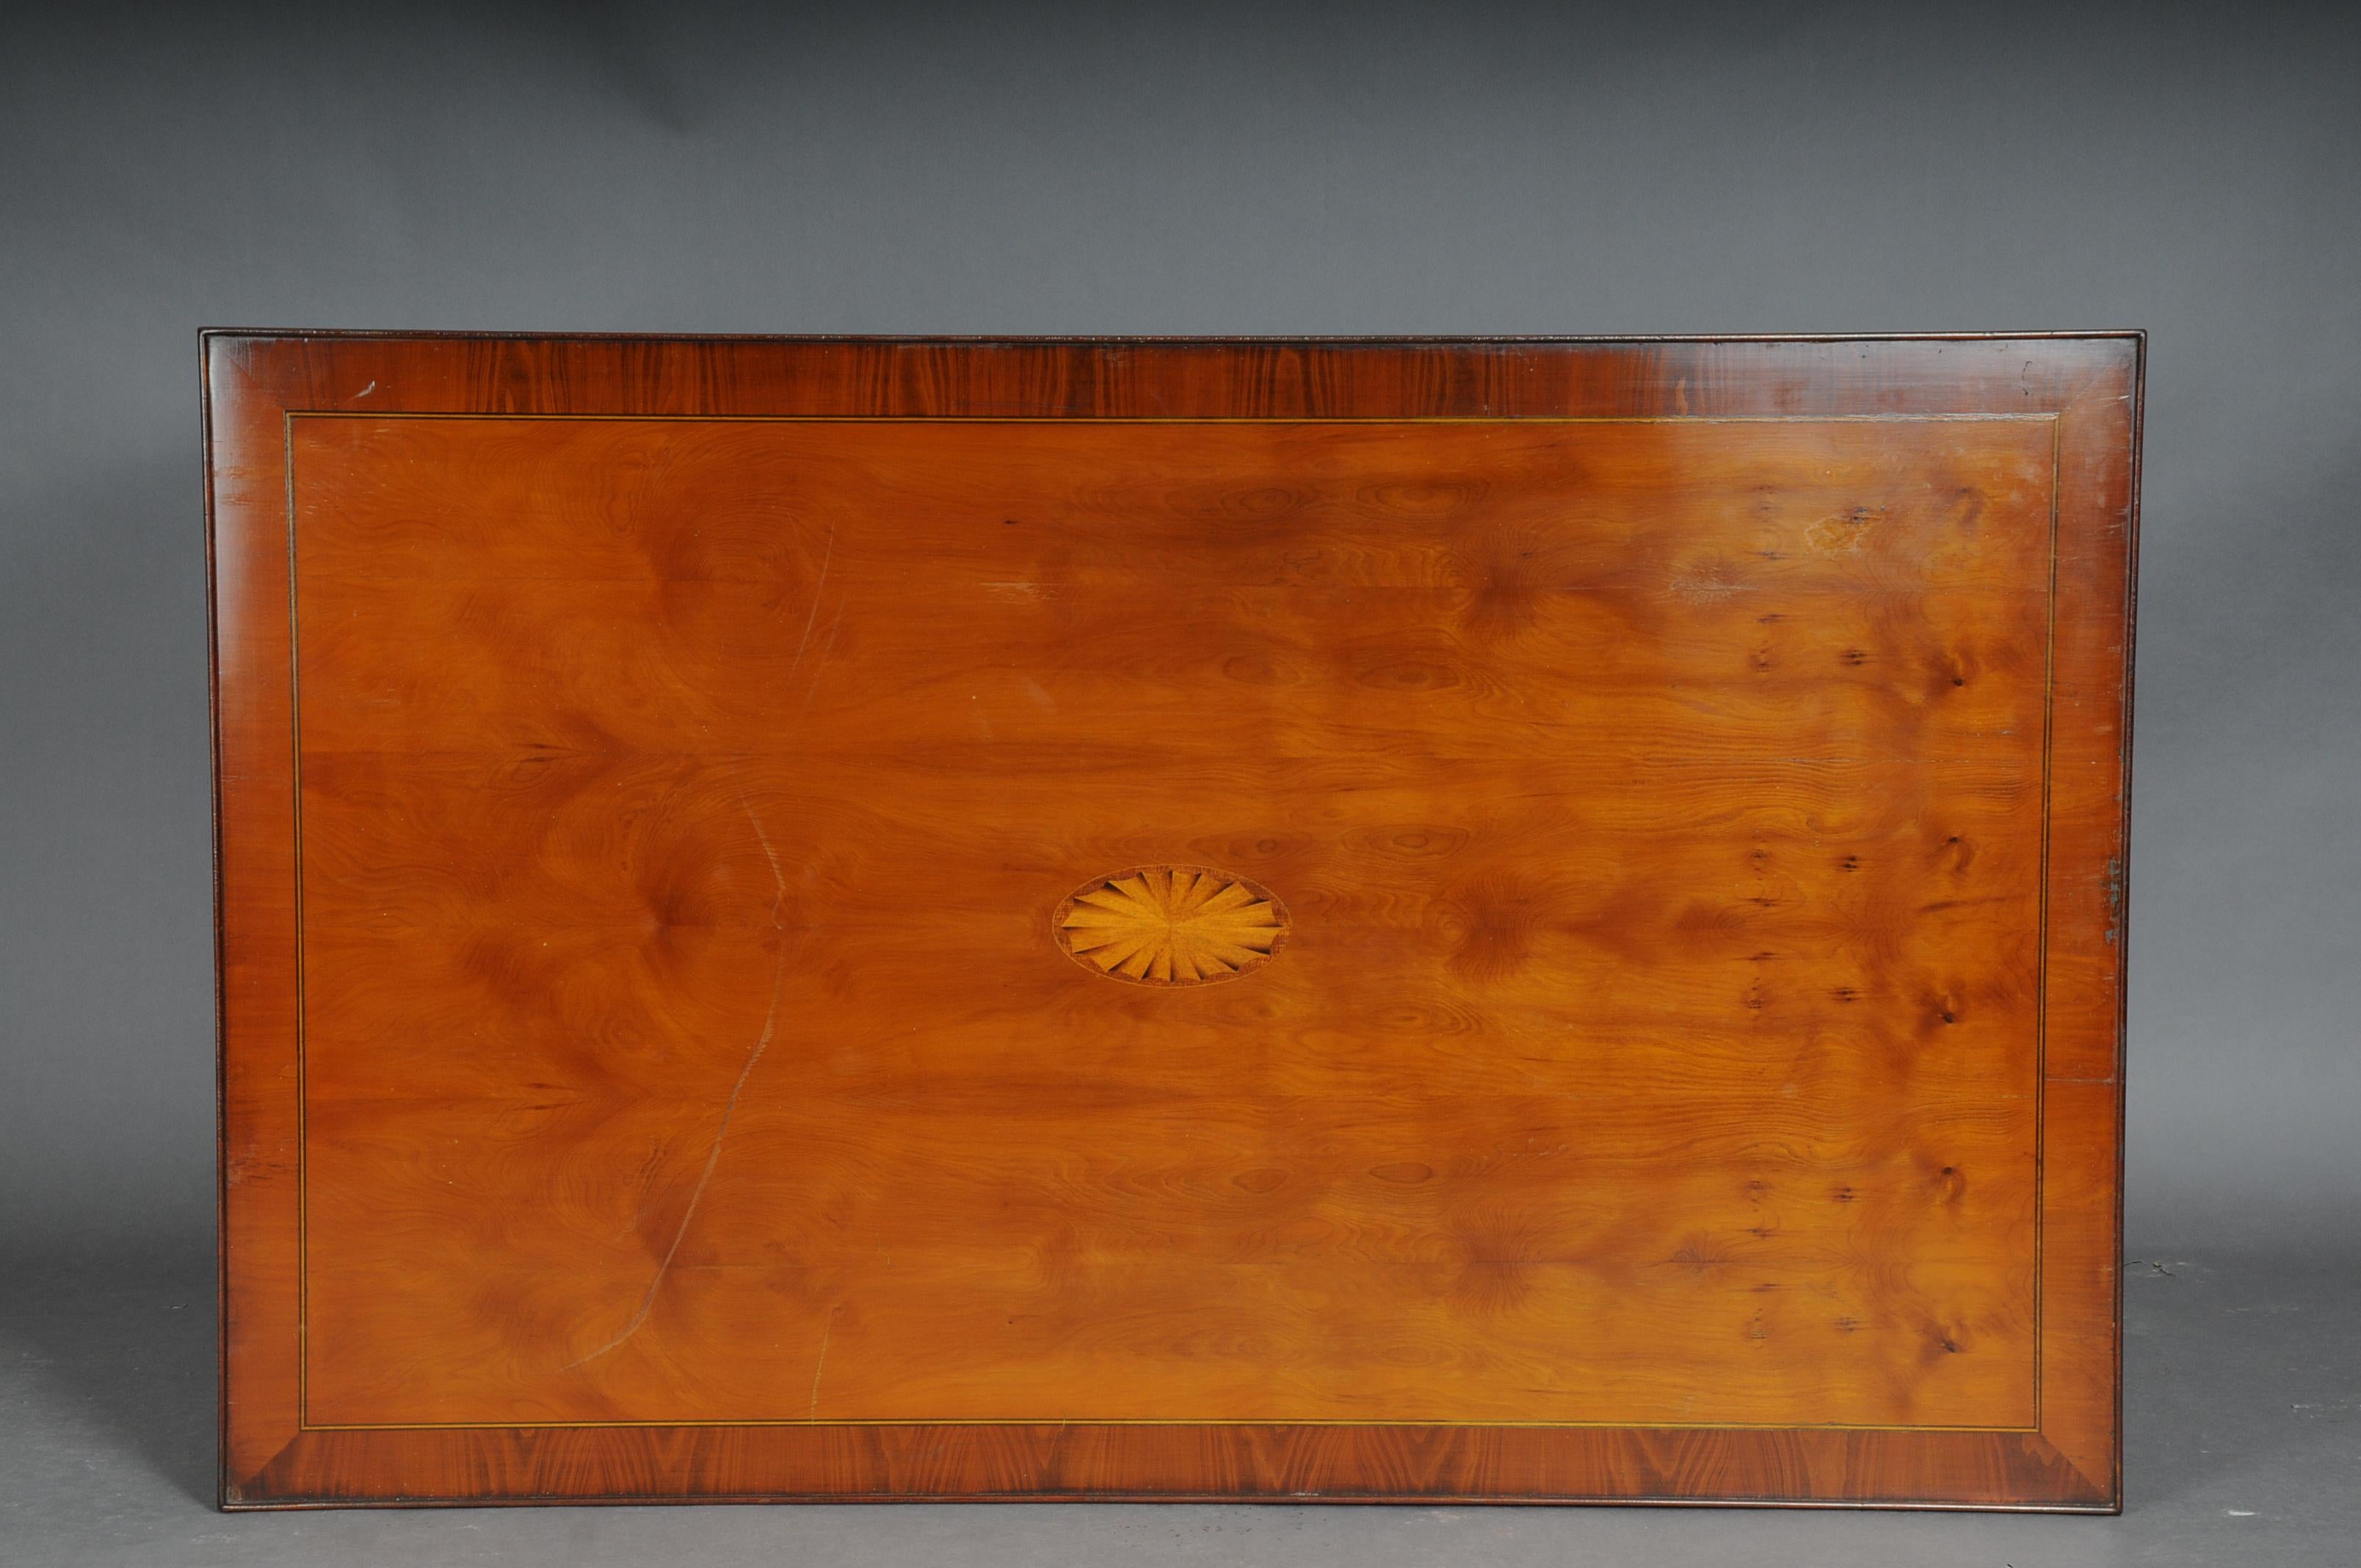 table basse / table de canapé anglaise du 20ème siècle, en if

Corps en placage de bois massif. base du cadre à 1 tiroir sur pieds effilés. Plaque de recouvrement légèrement saillante incrustée. Une plaque de verre spécialement conçue est